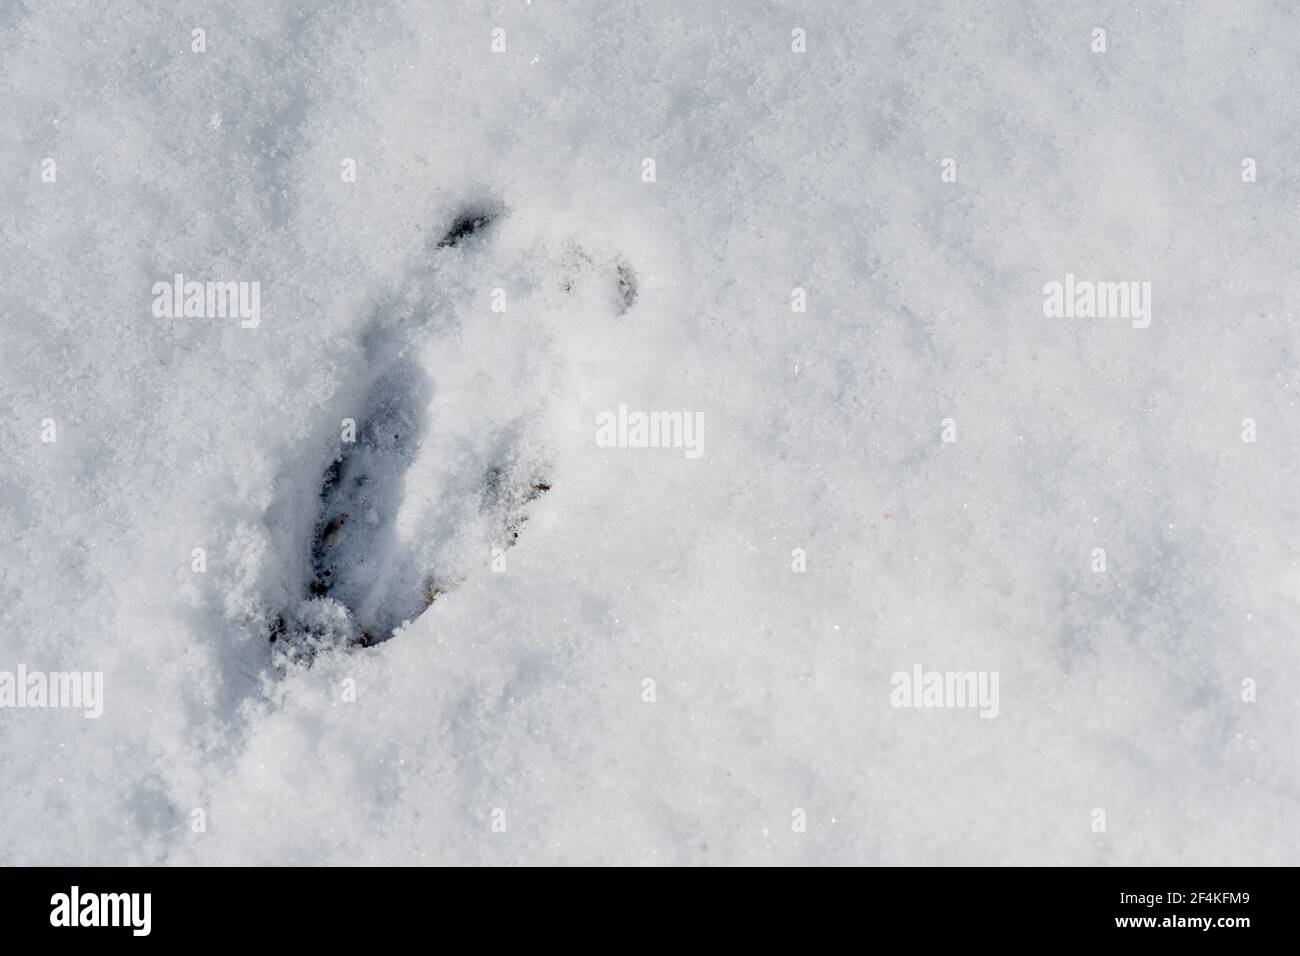 Hirsch Fußabdruck im Schnee im Winter oder Frühjahr im Wald oder Wald, aus der Nähe Stockfoto